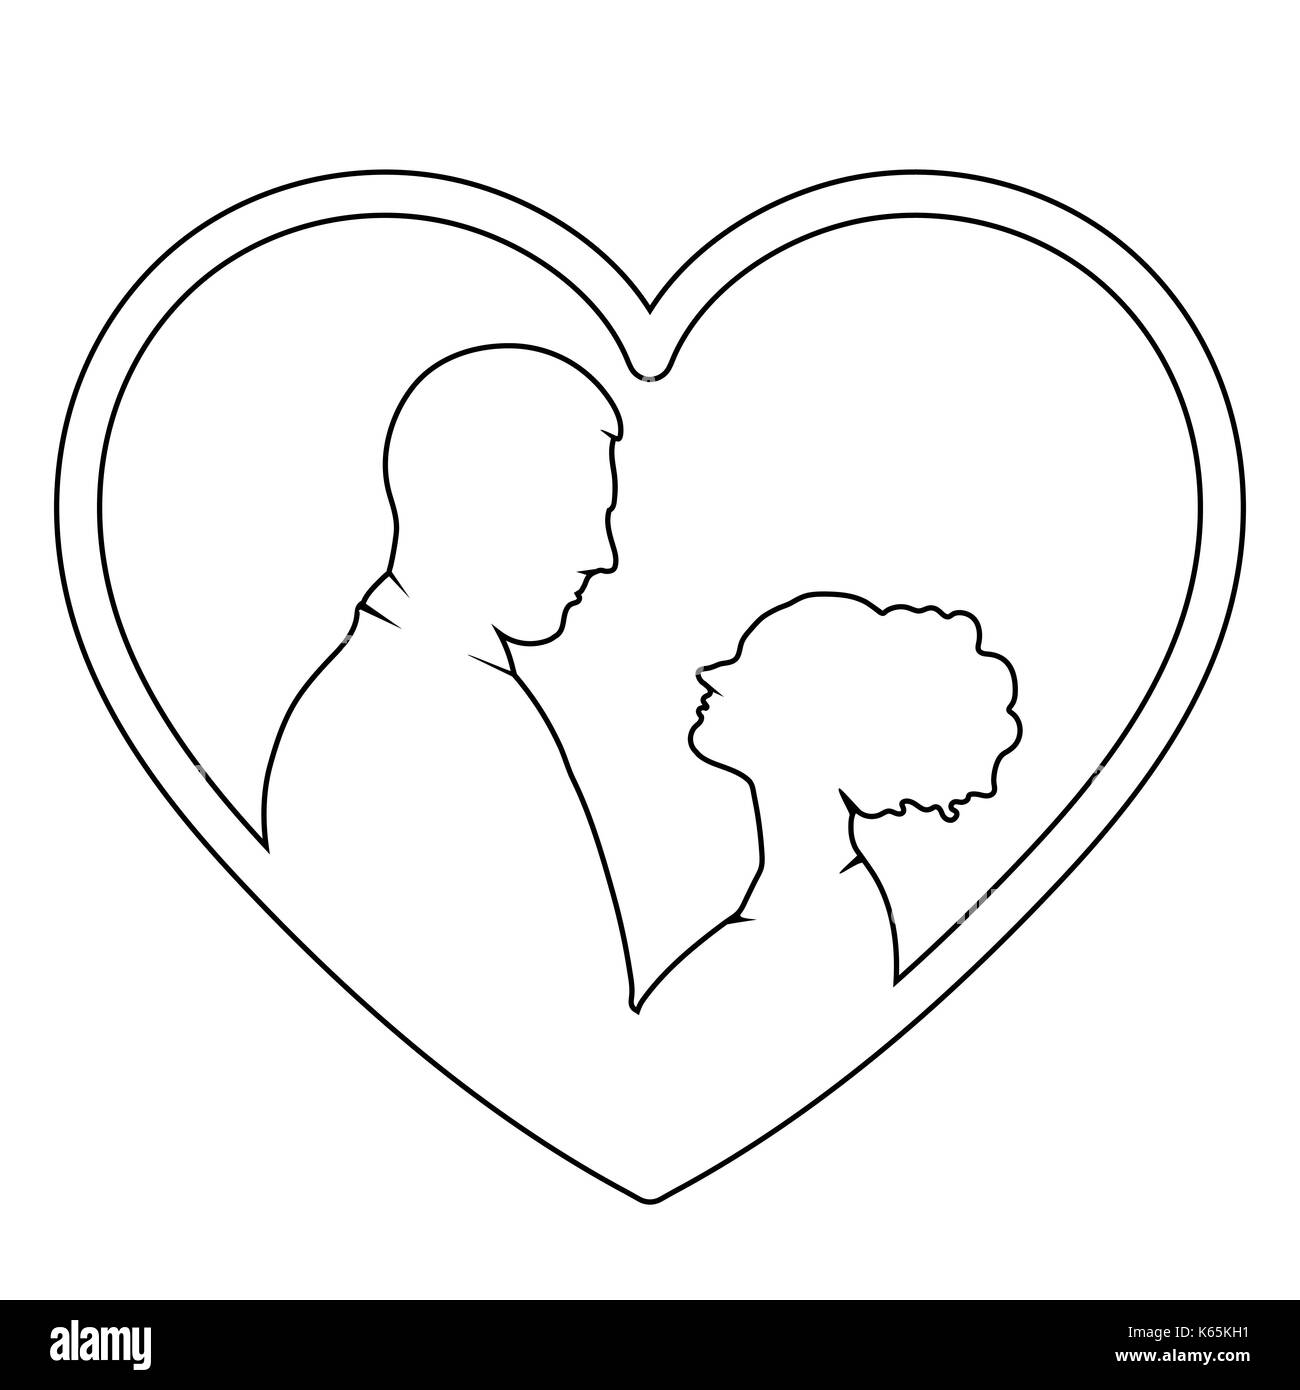 Couple In Love Contours Vector Icone Plate Logo Epoux D Ossature Dessin Contours De Aiment Les Hommes Et Les Femmes A La Recherche A L Autre Dans L Entendre Image Vectorielle Stock Alamy